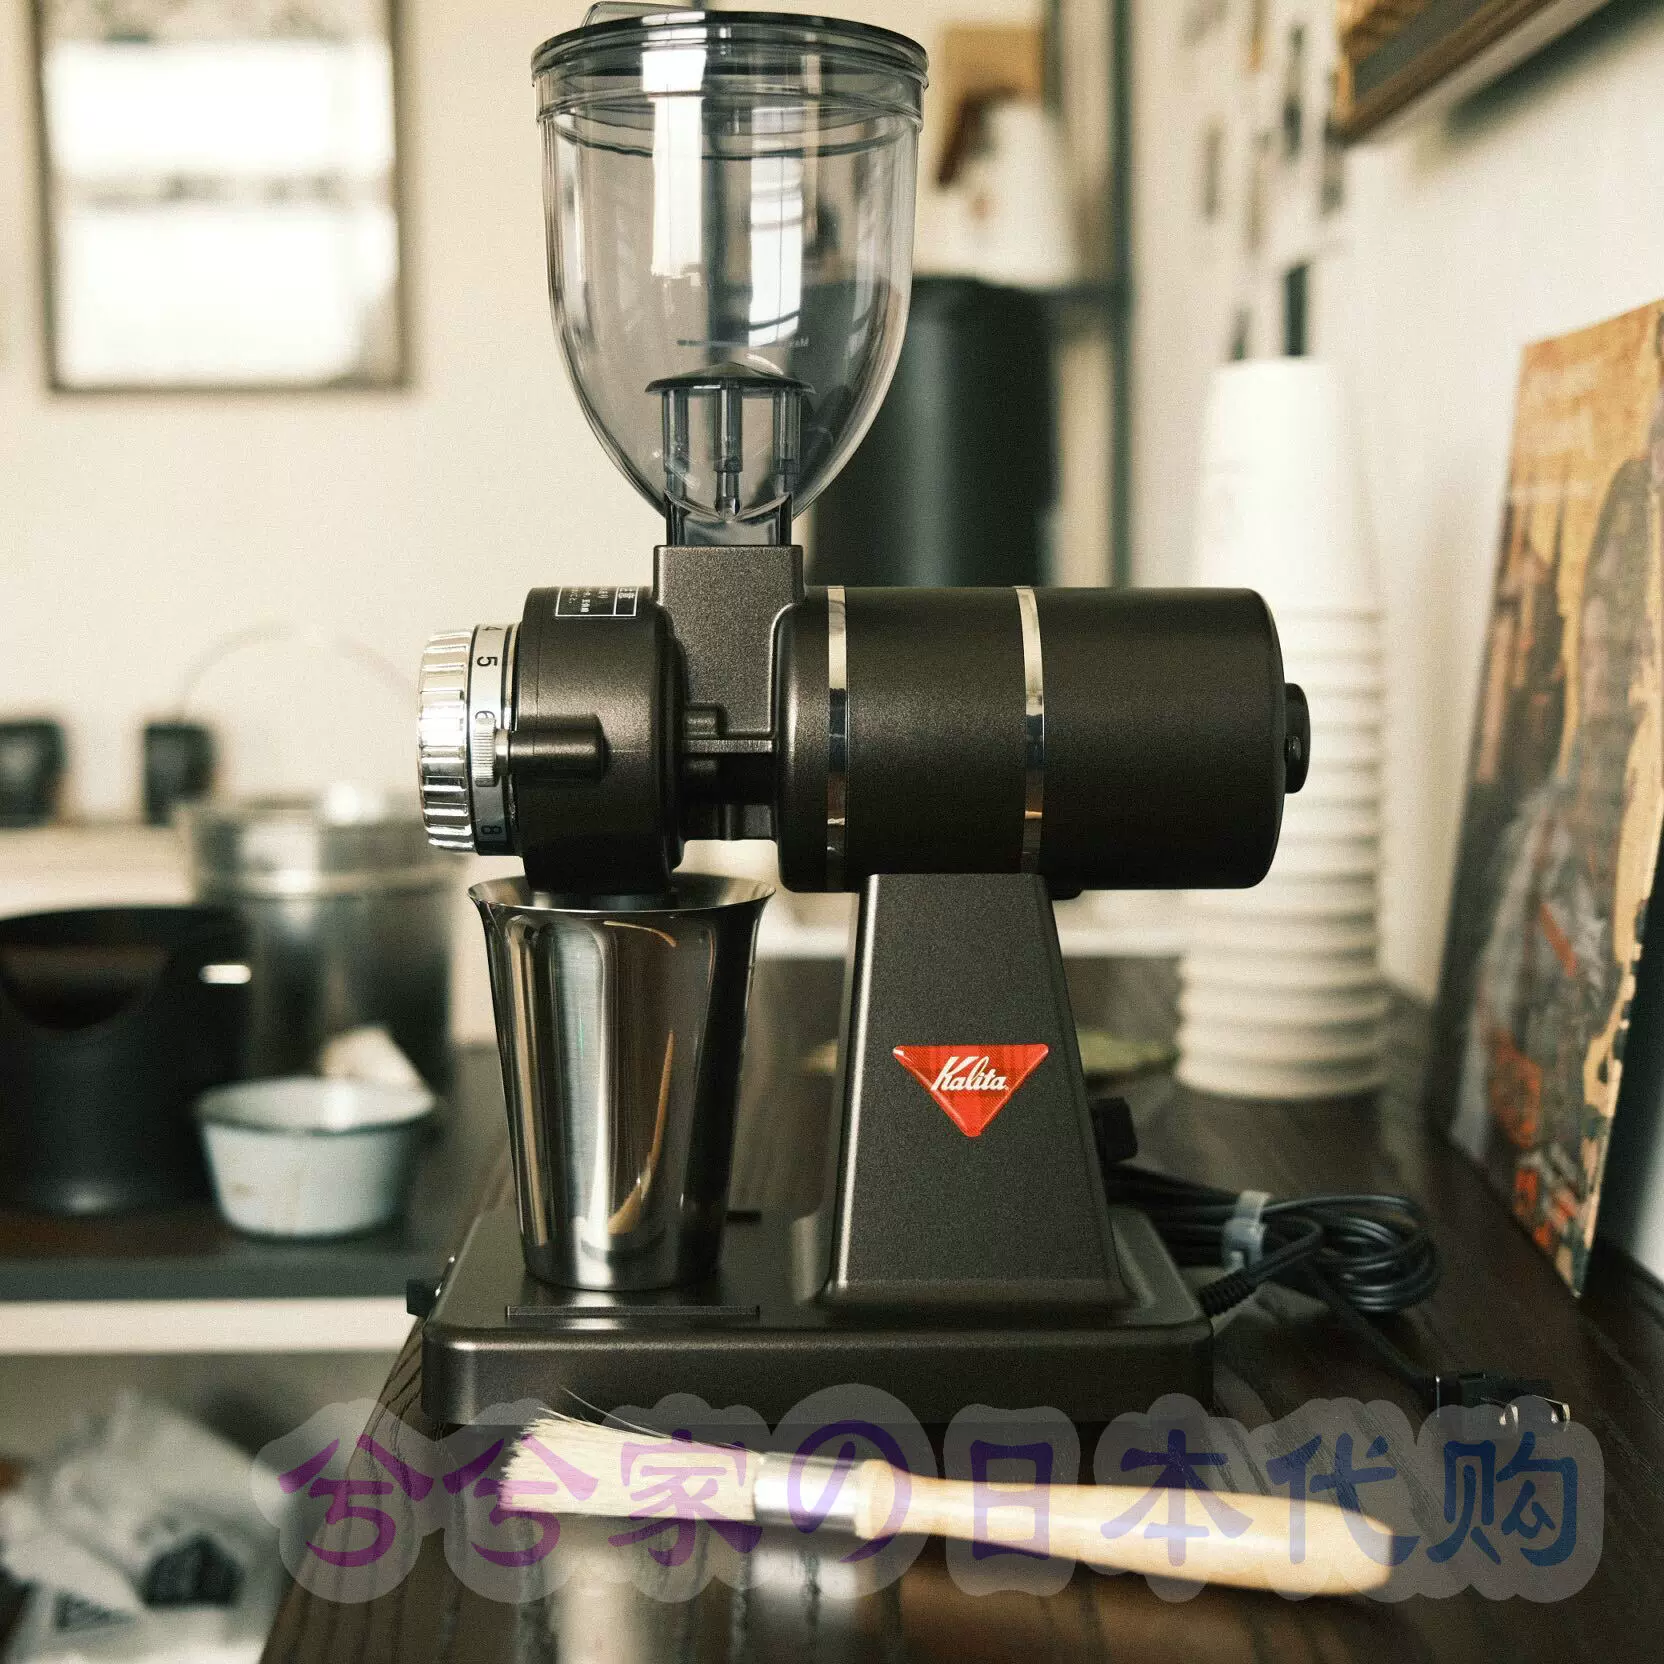 日本原裝kalita磨豆機nice cut g電動咖啡磨豆機咖啡豆研磨機100V-Taobao